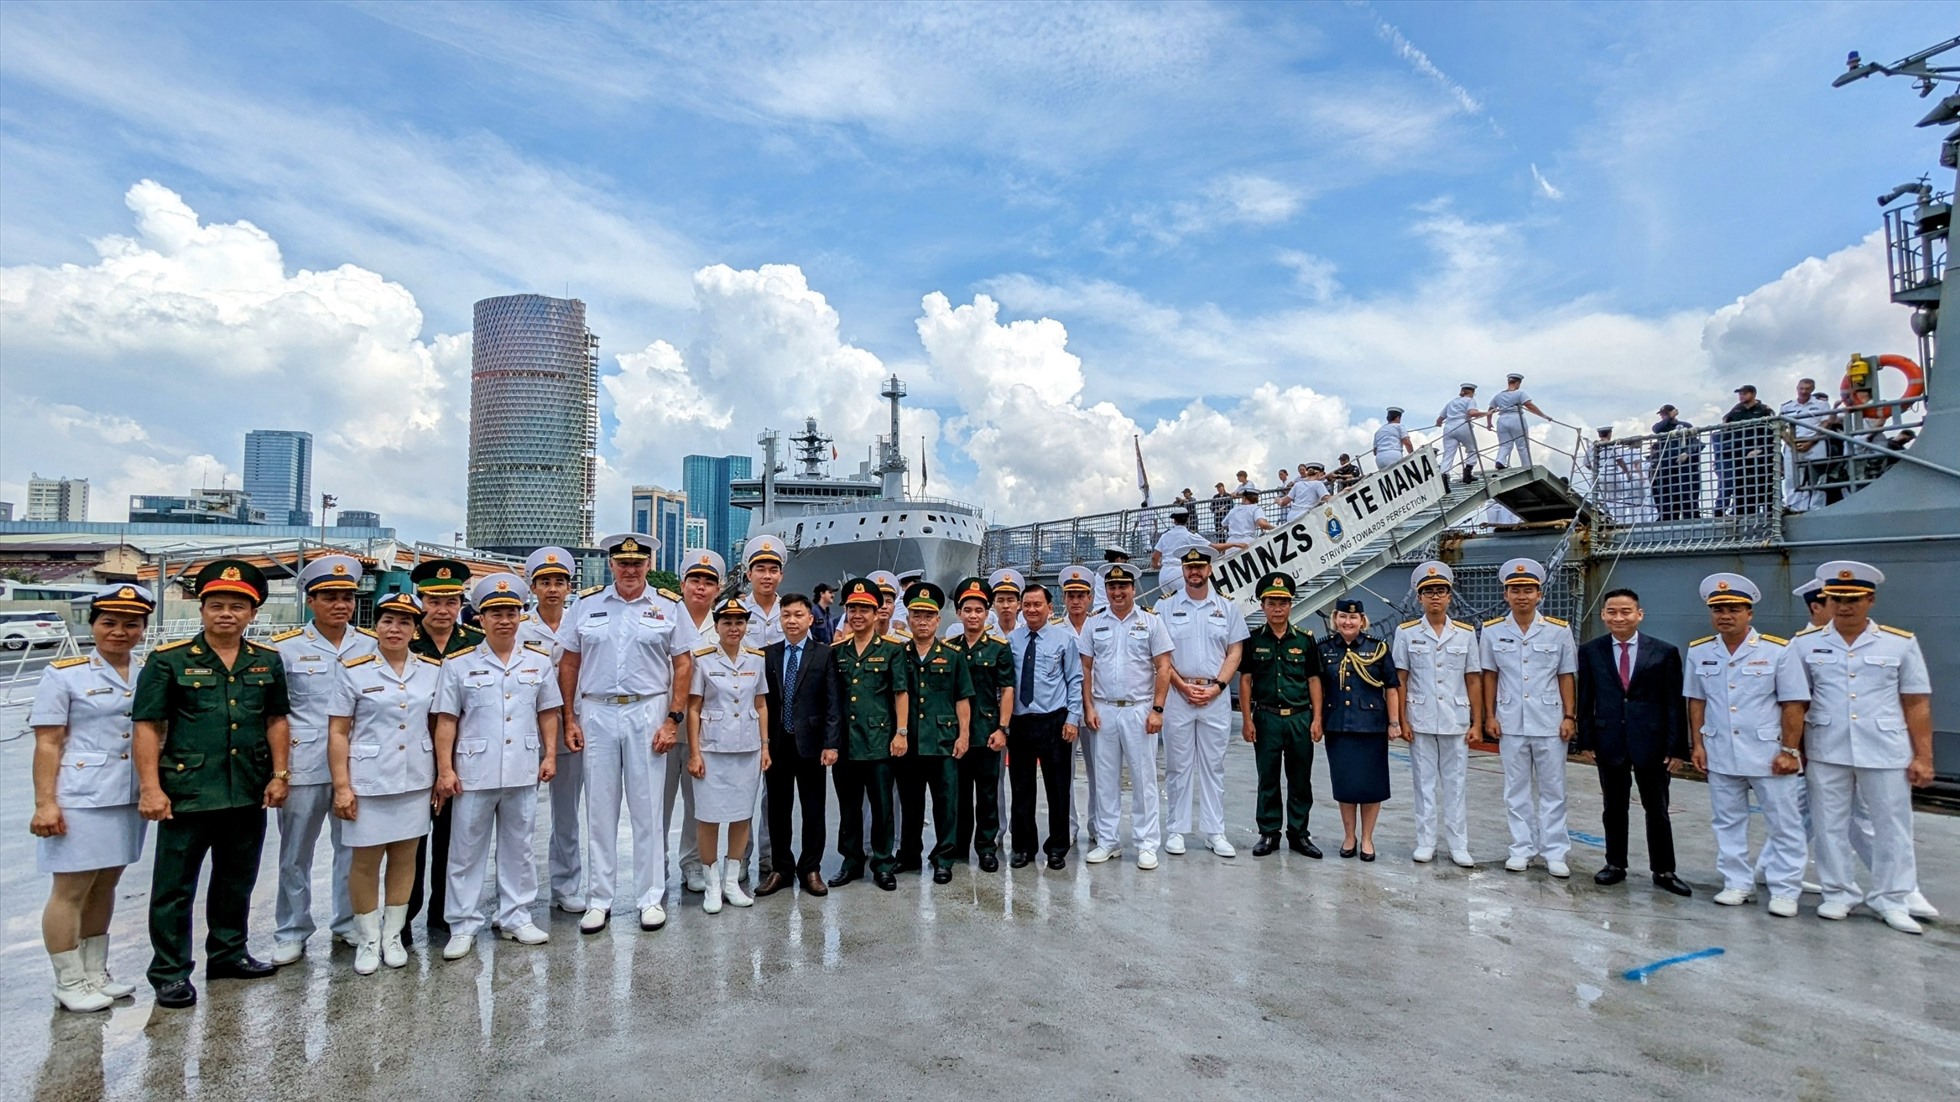 Hai tàu hải quân Hoàng gia New Zealand đang tiến hành các cuộc diễn tập thường lệ ở Đông Nam Á trong đợt triển khai hải quân lớn nhất của Lực lượng Quốc phòng New Zealand tới khu vực Ấn Độ Dương - Thái Bình Dương. Đồng thời, thực hiện một số chuyến thăm mang tính chất “Ngoại giao Quốc phòng”, bao gồm chuyến thăm tới Việt Nam. Đây là lần đầu tiên hai tàu hải quân Hoàng gia New Zealand cùng thăm Việt Nam